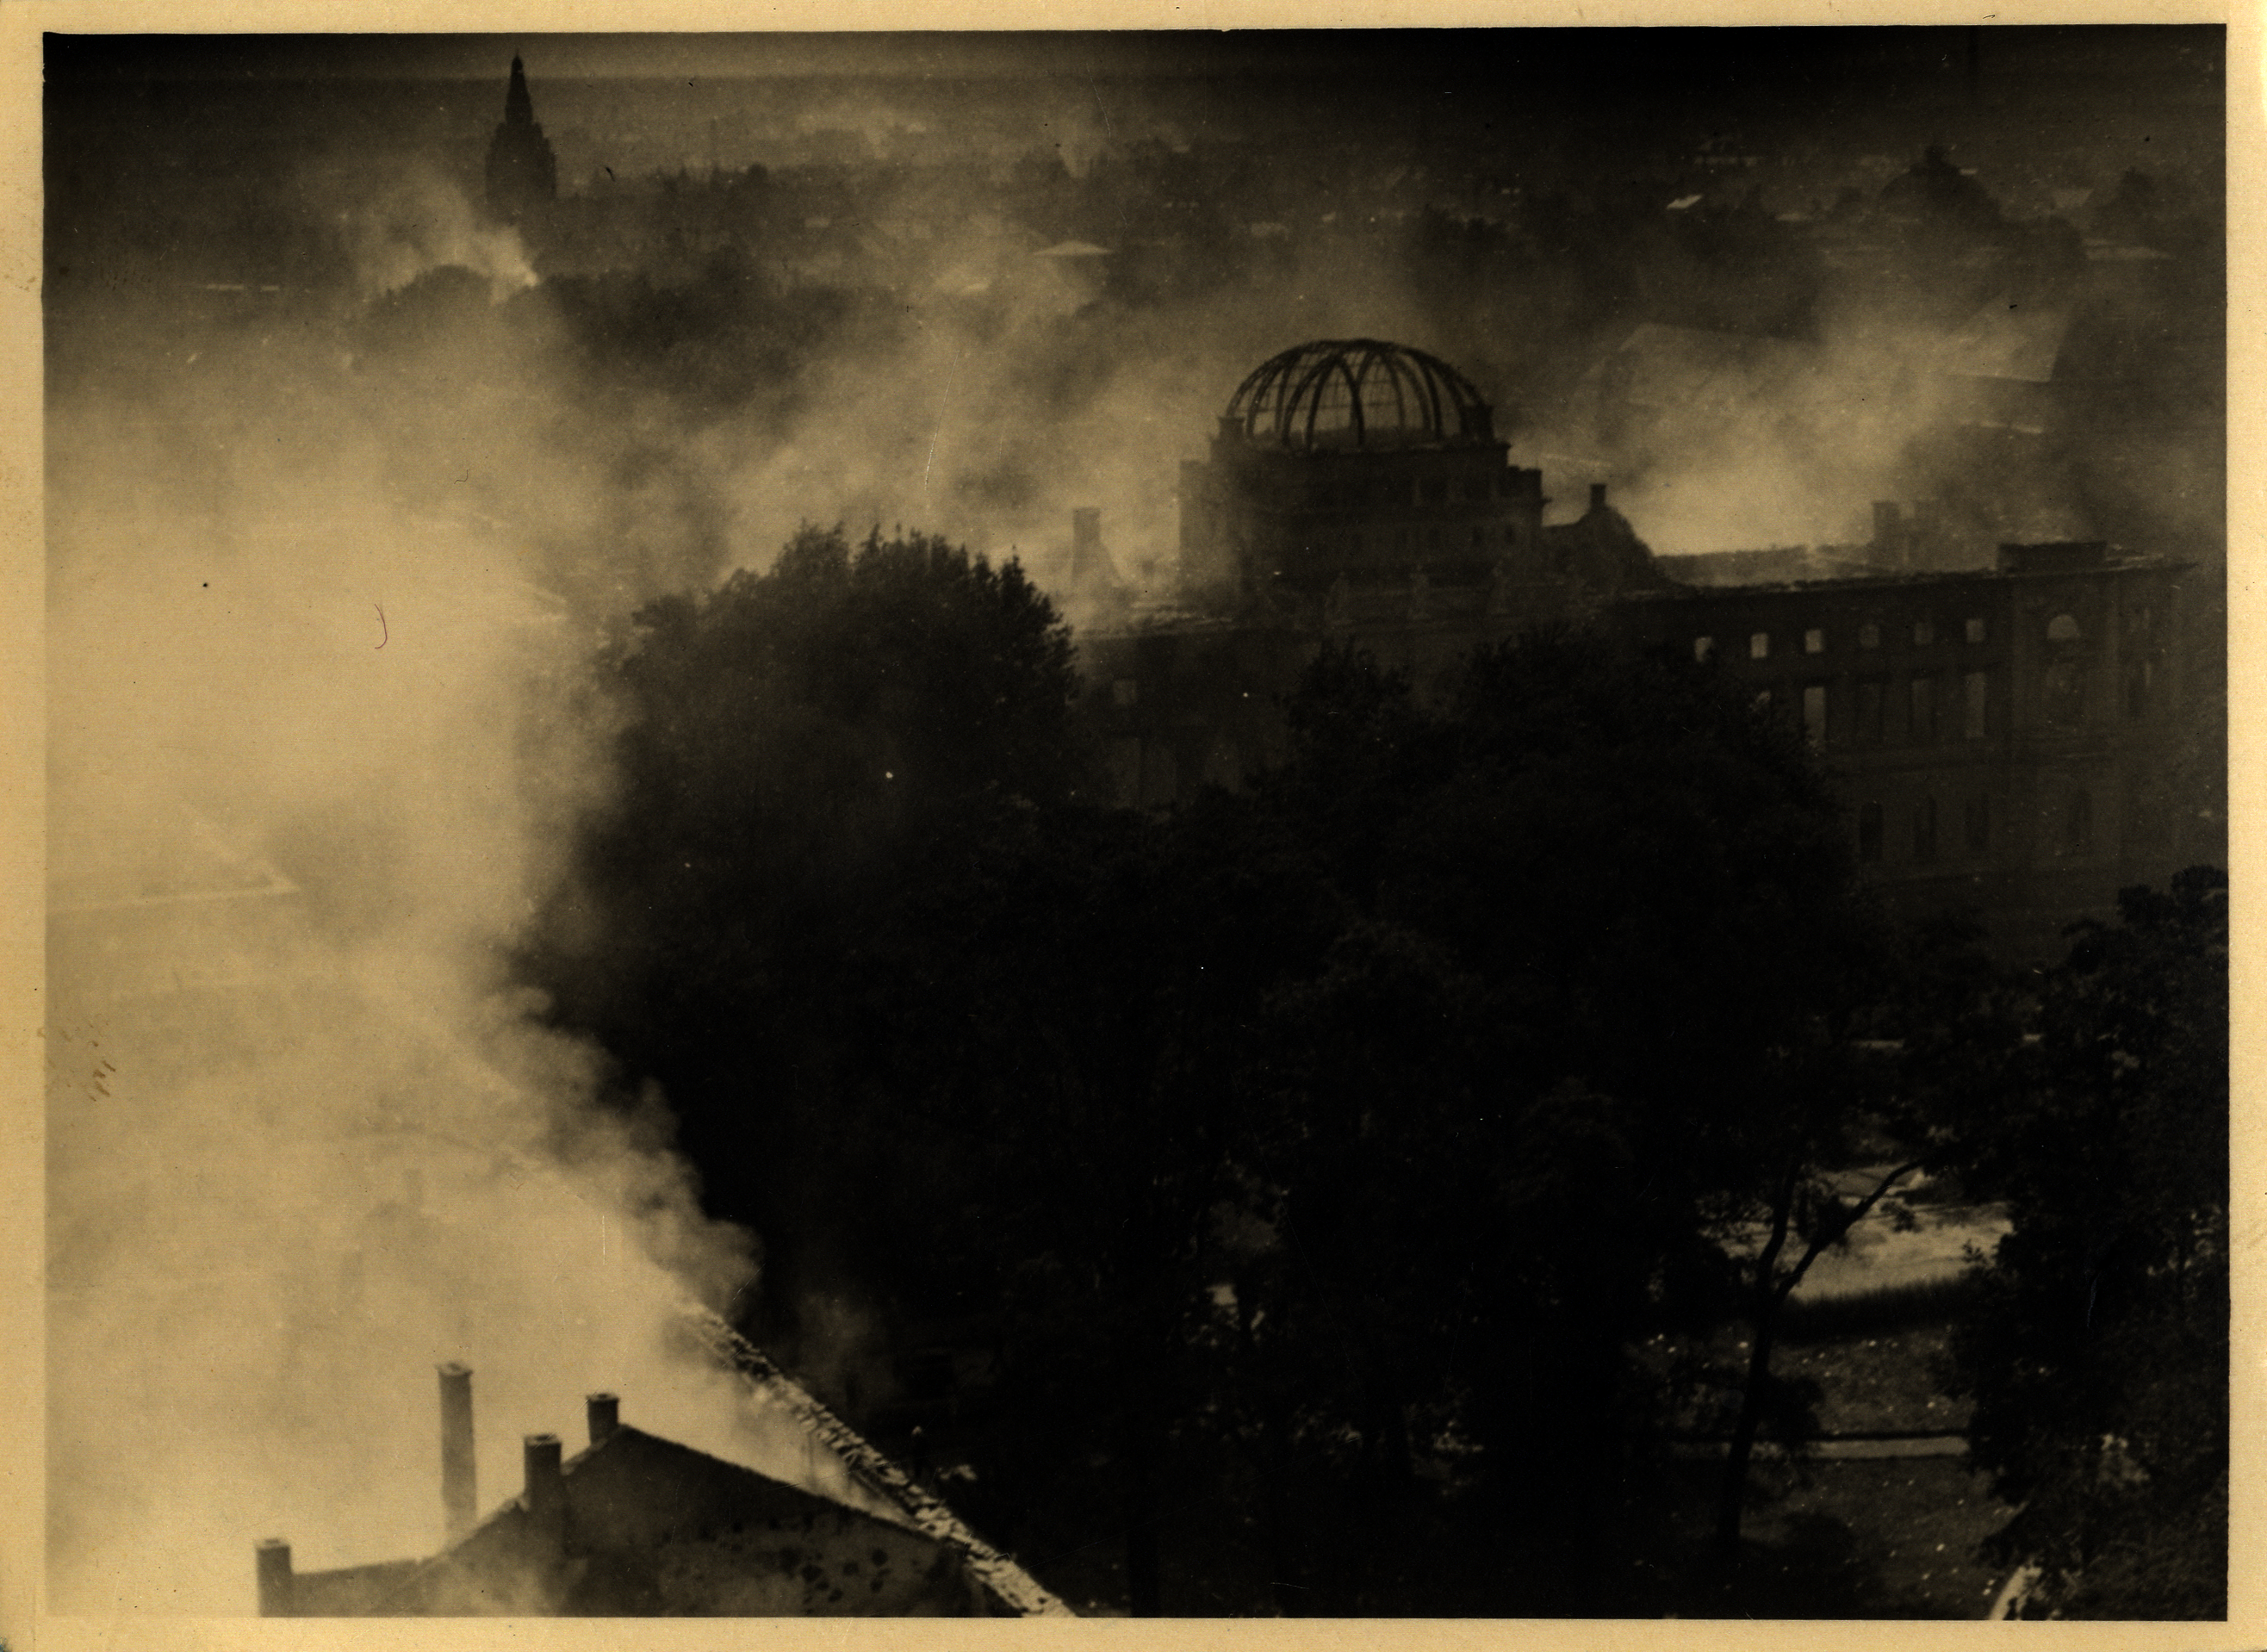 Die Fotografie aus der Bombennacht zeigt das brennende Sammlungsgebäude am Friedrichsplatz aus der Vogelperspektive, in Rauchschwaden gehüllt